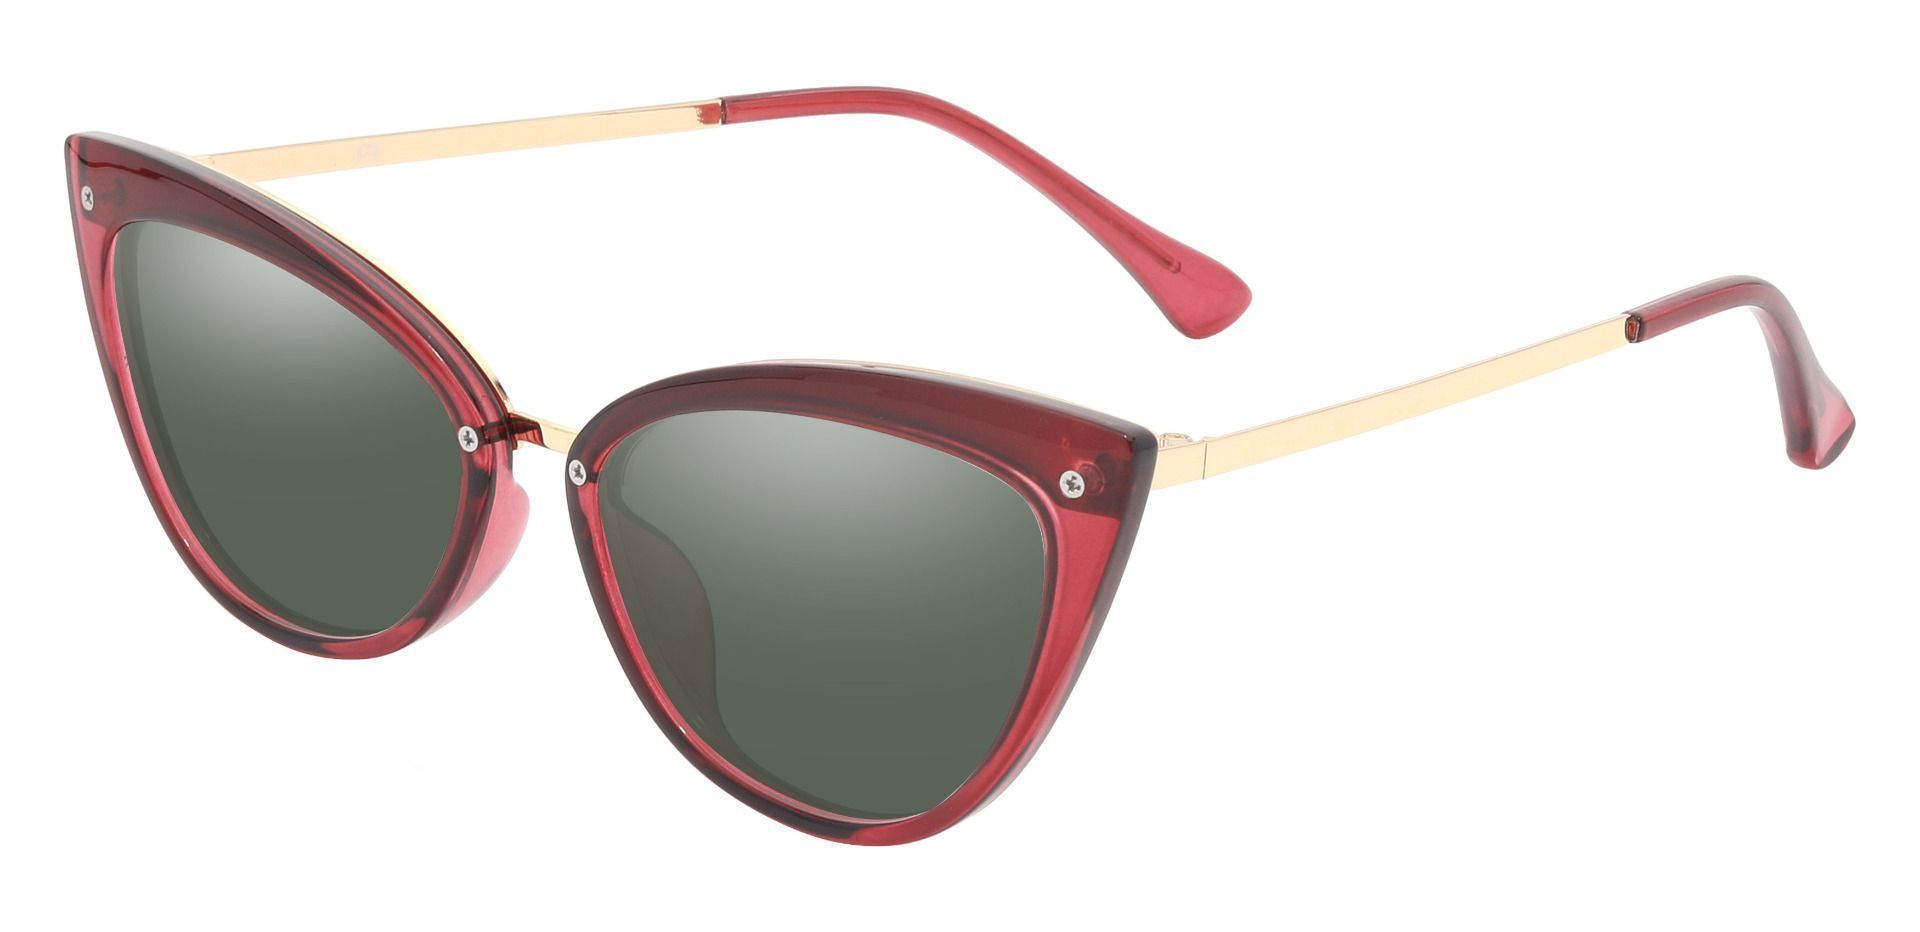 Glenda Cat Eye Prescription Sunglasses - Red Frame With Green Lenses